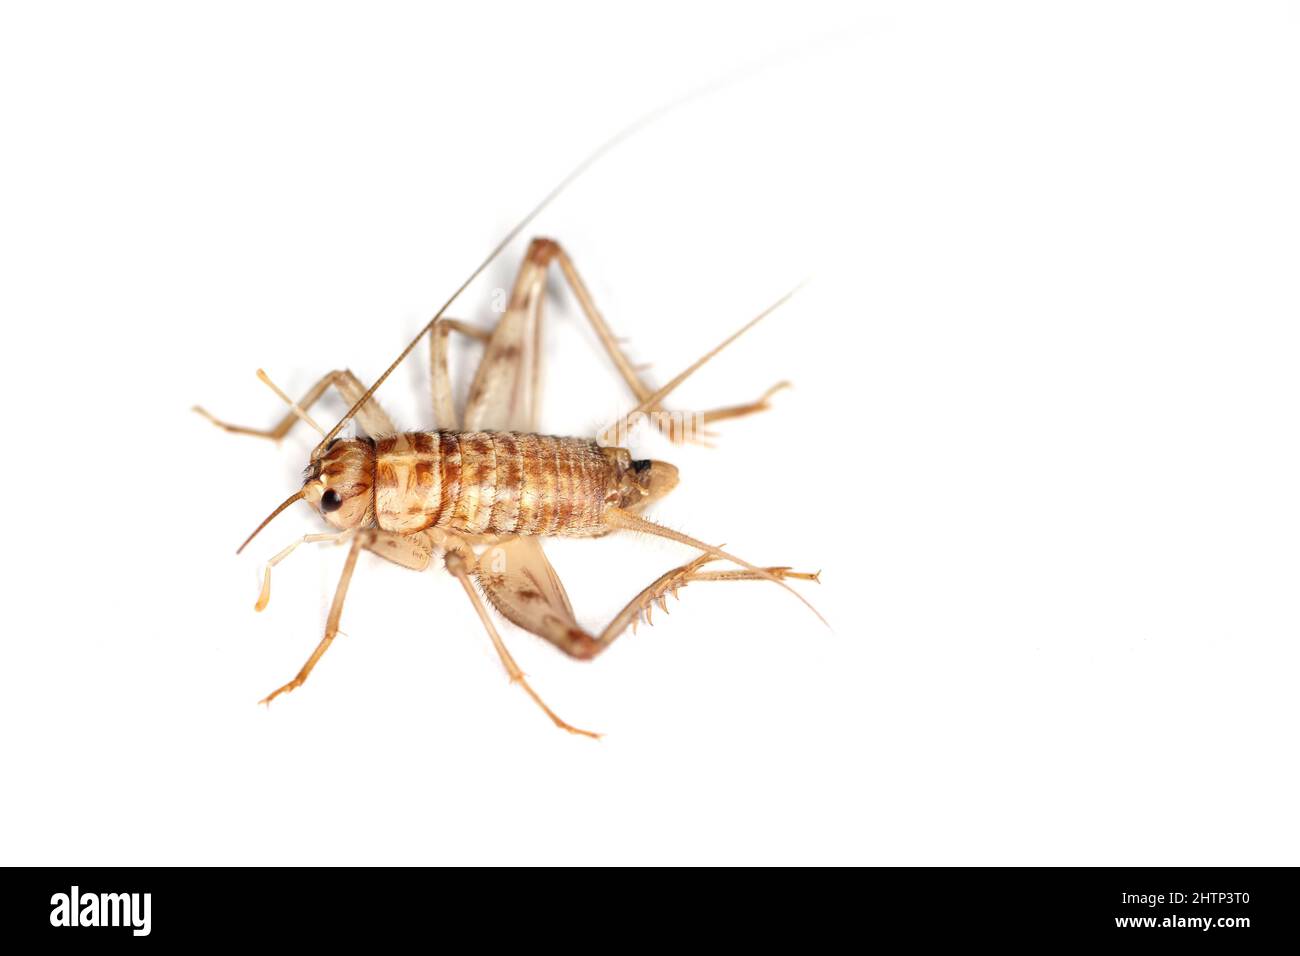 Cricket cubano, Gryllus assimilis, una specie di allevamento, insetto alimentare. Cibo per rettili, anfibi, ragni. Foto Stock